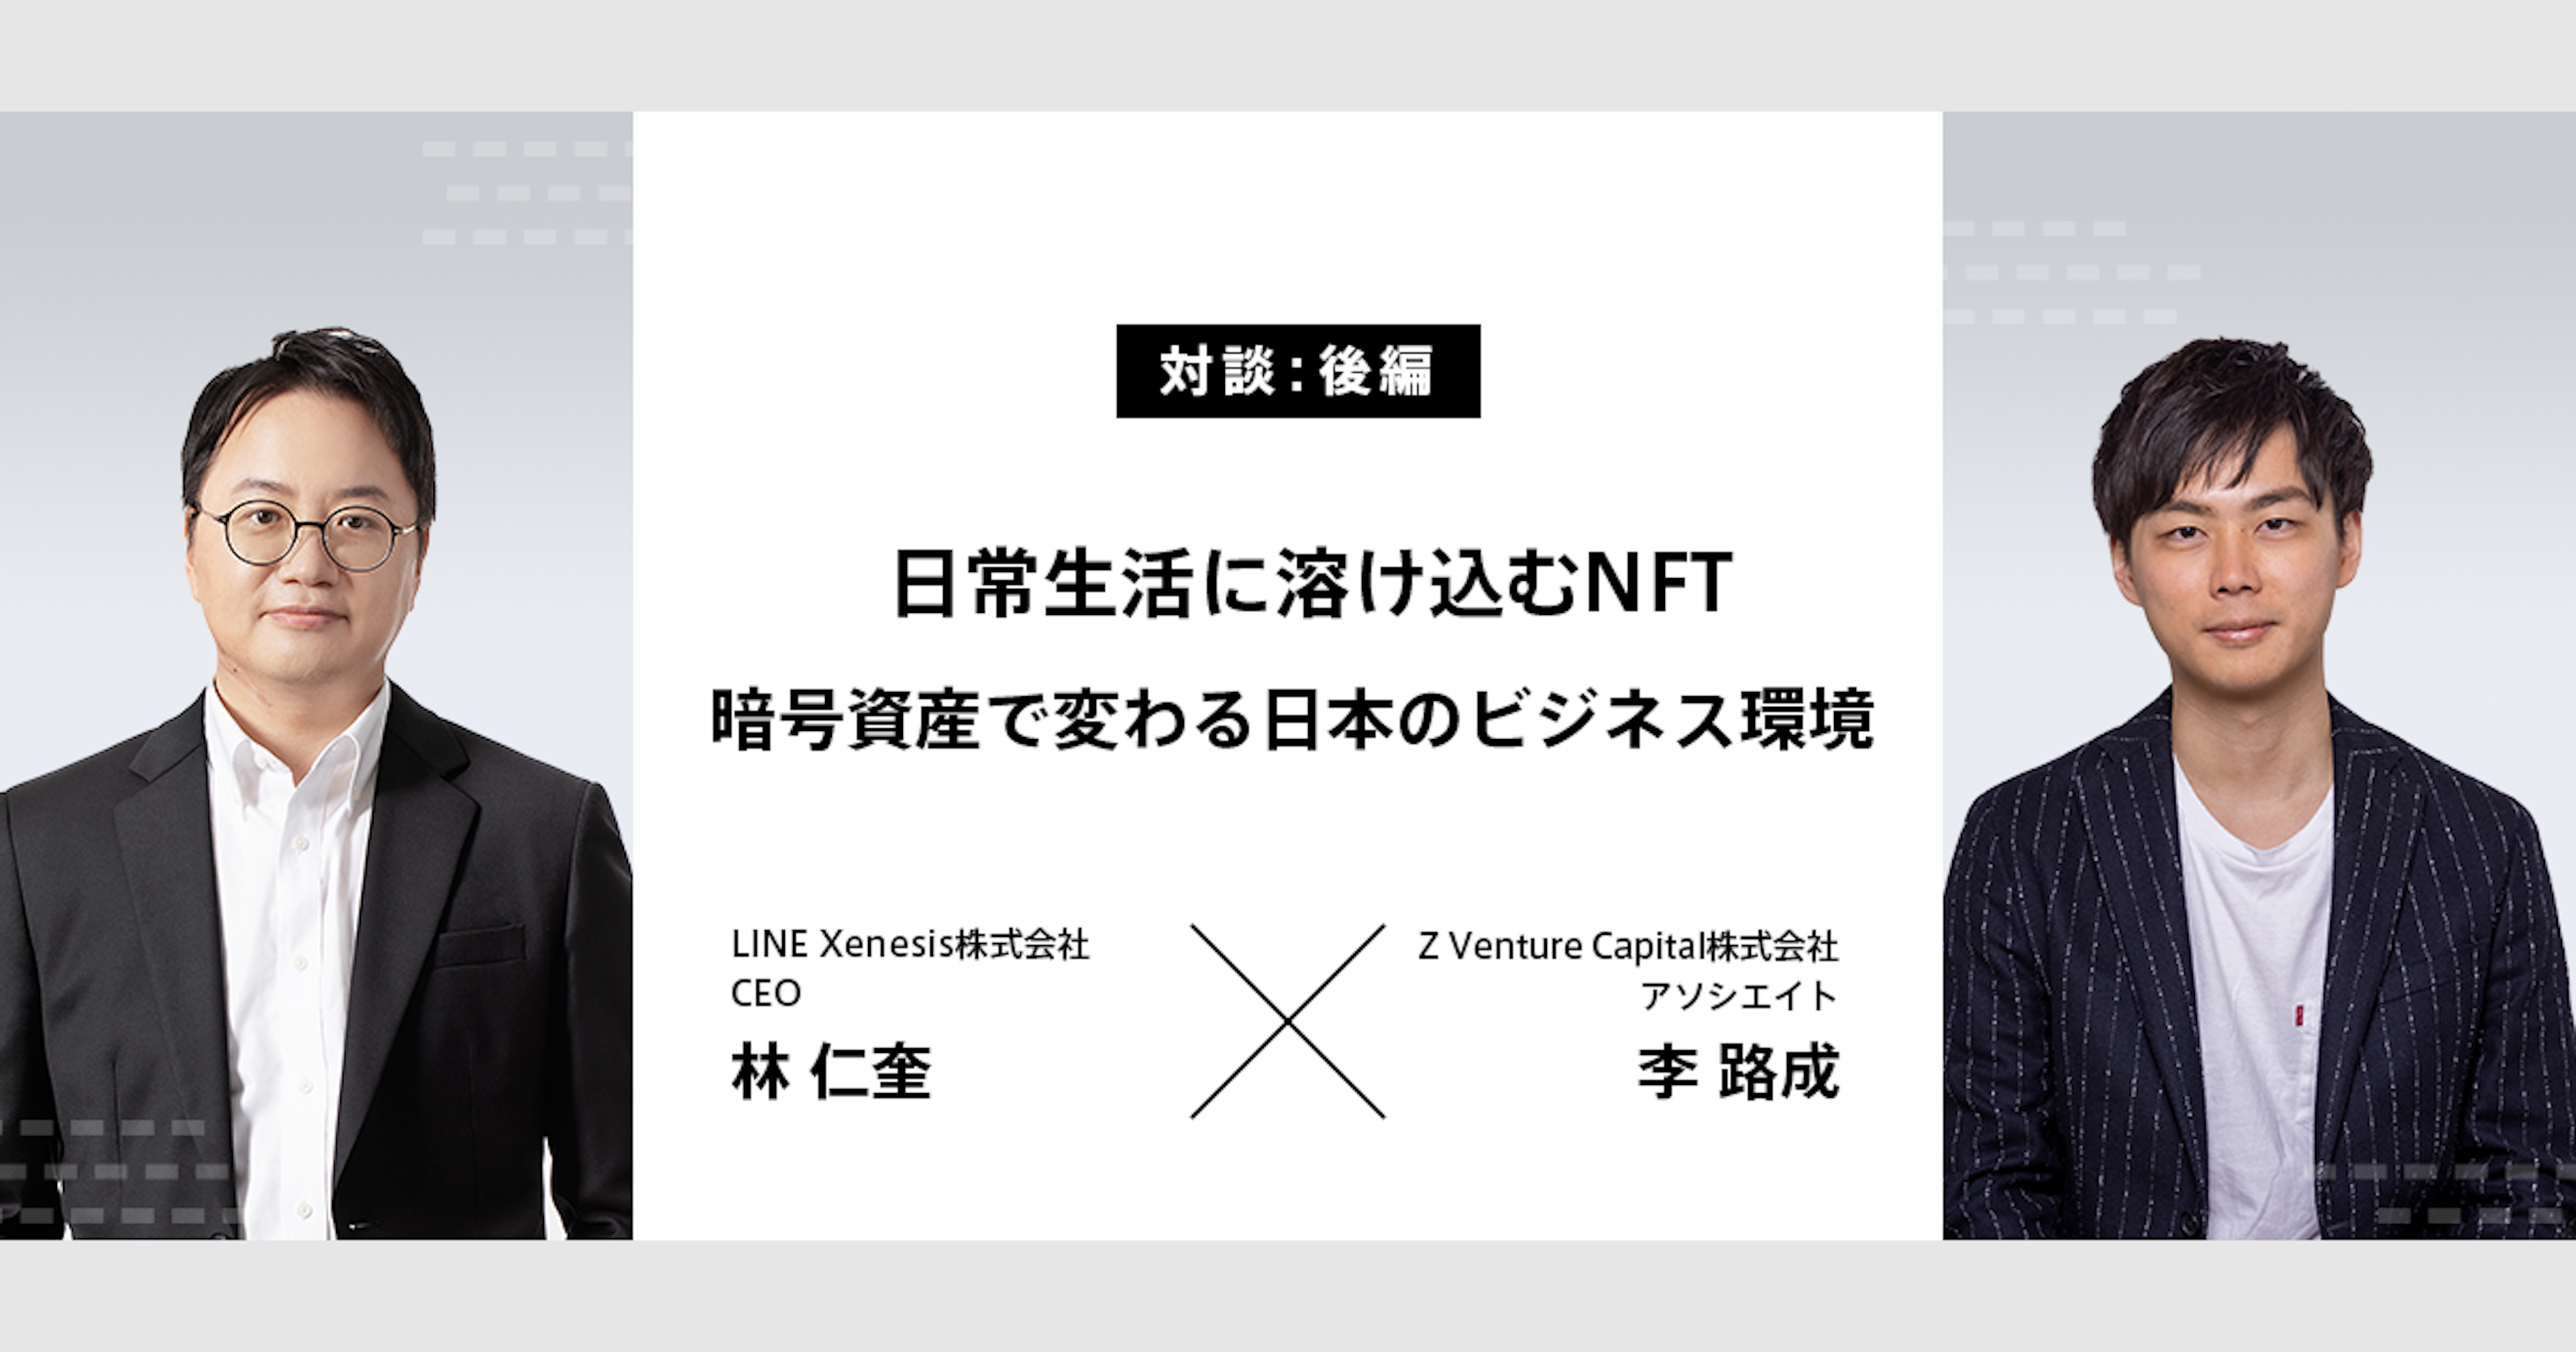 【後編】日常生活に溶け込むNFT。ブロックチェーンで変わる日本のビジネス環境